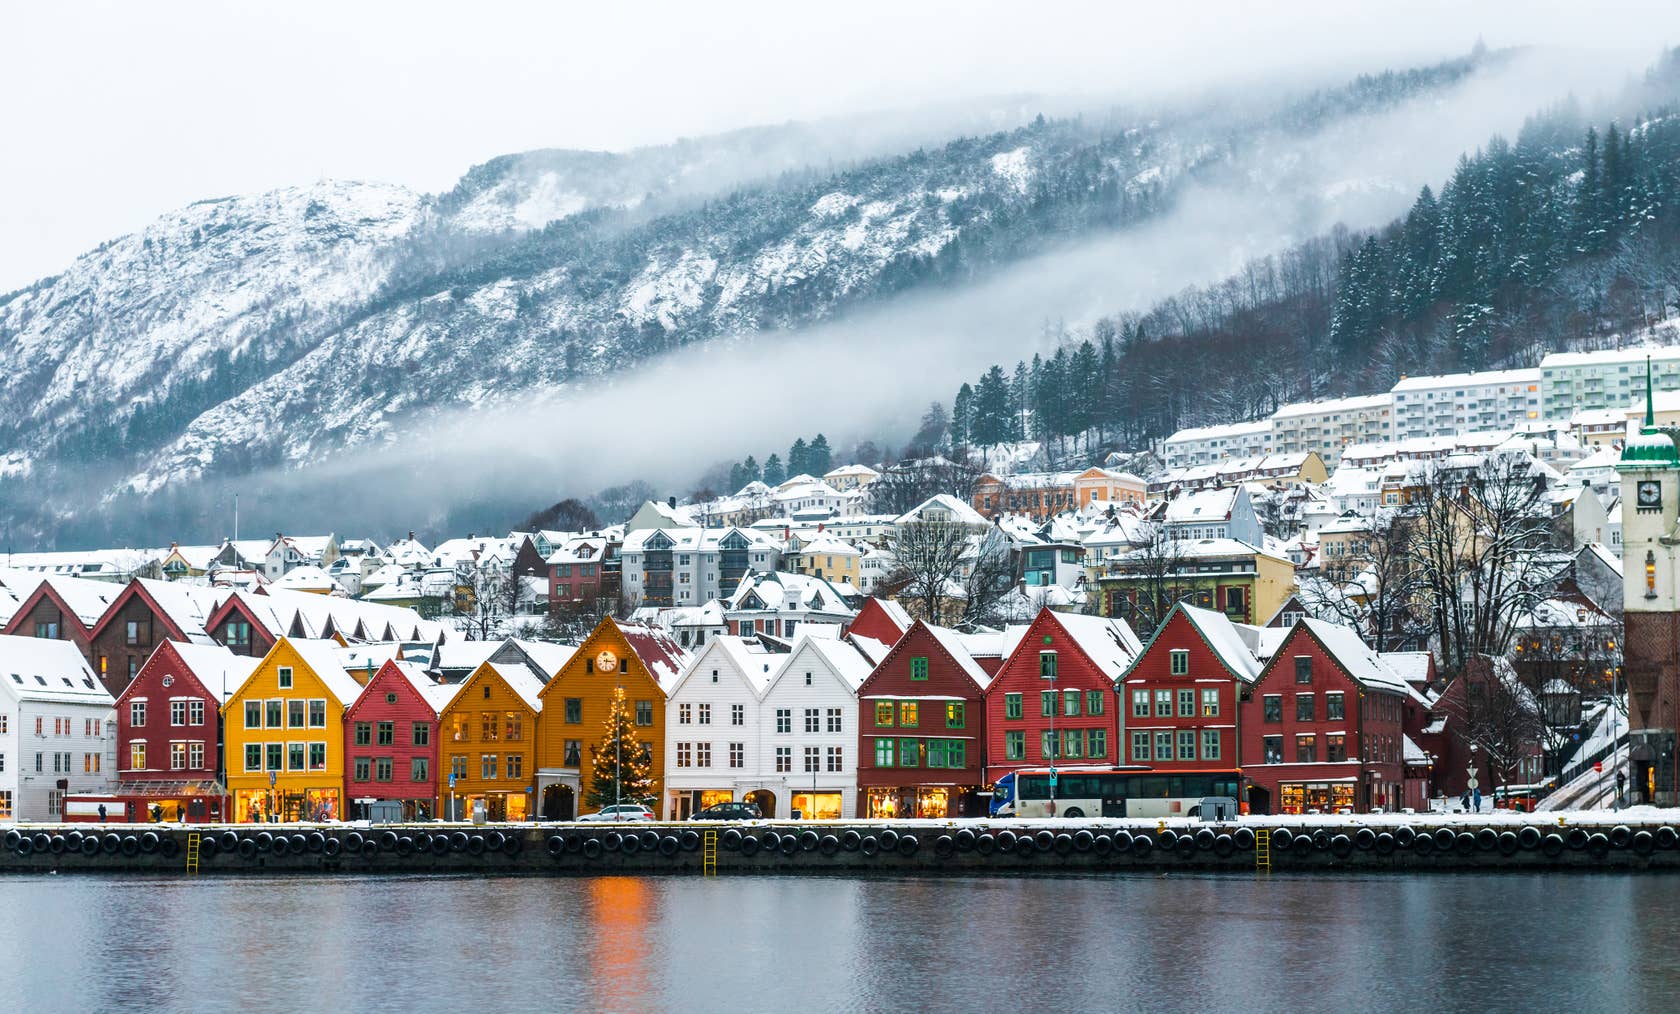 Affitti per le vacanze a Bergen